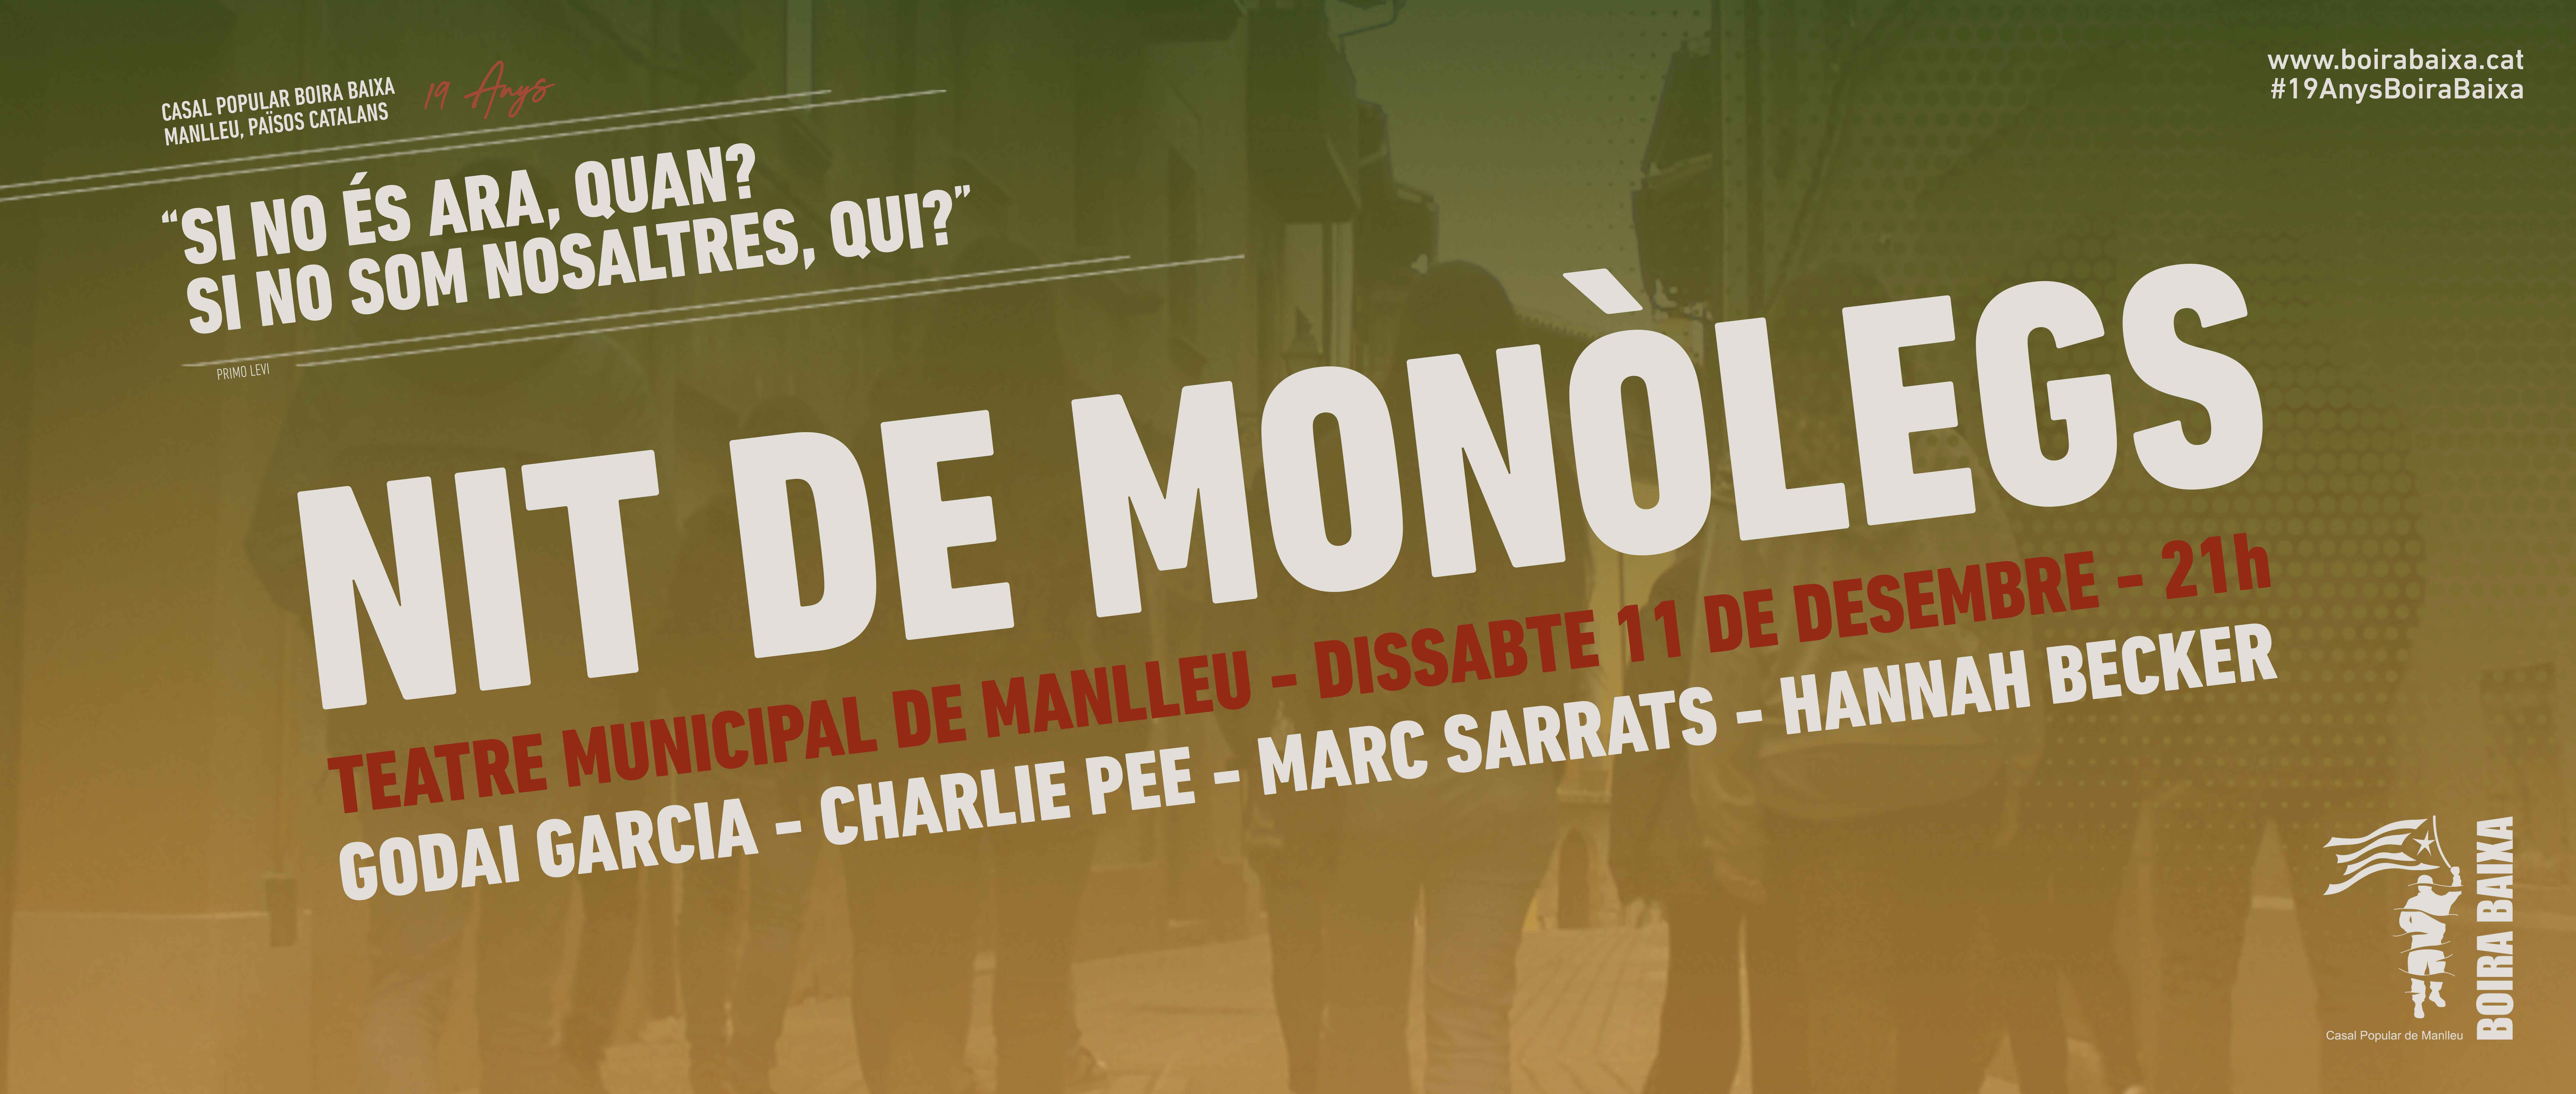 Nit d'homilies - Monòlegs al Teatre Municipal de Manlleu